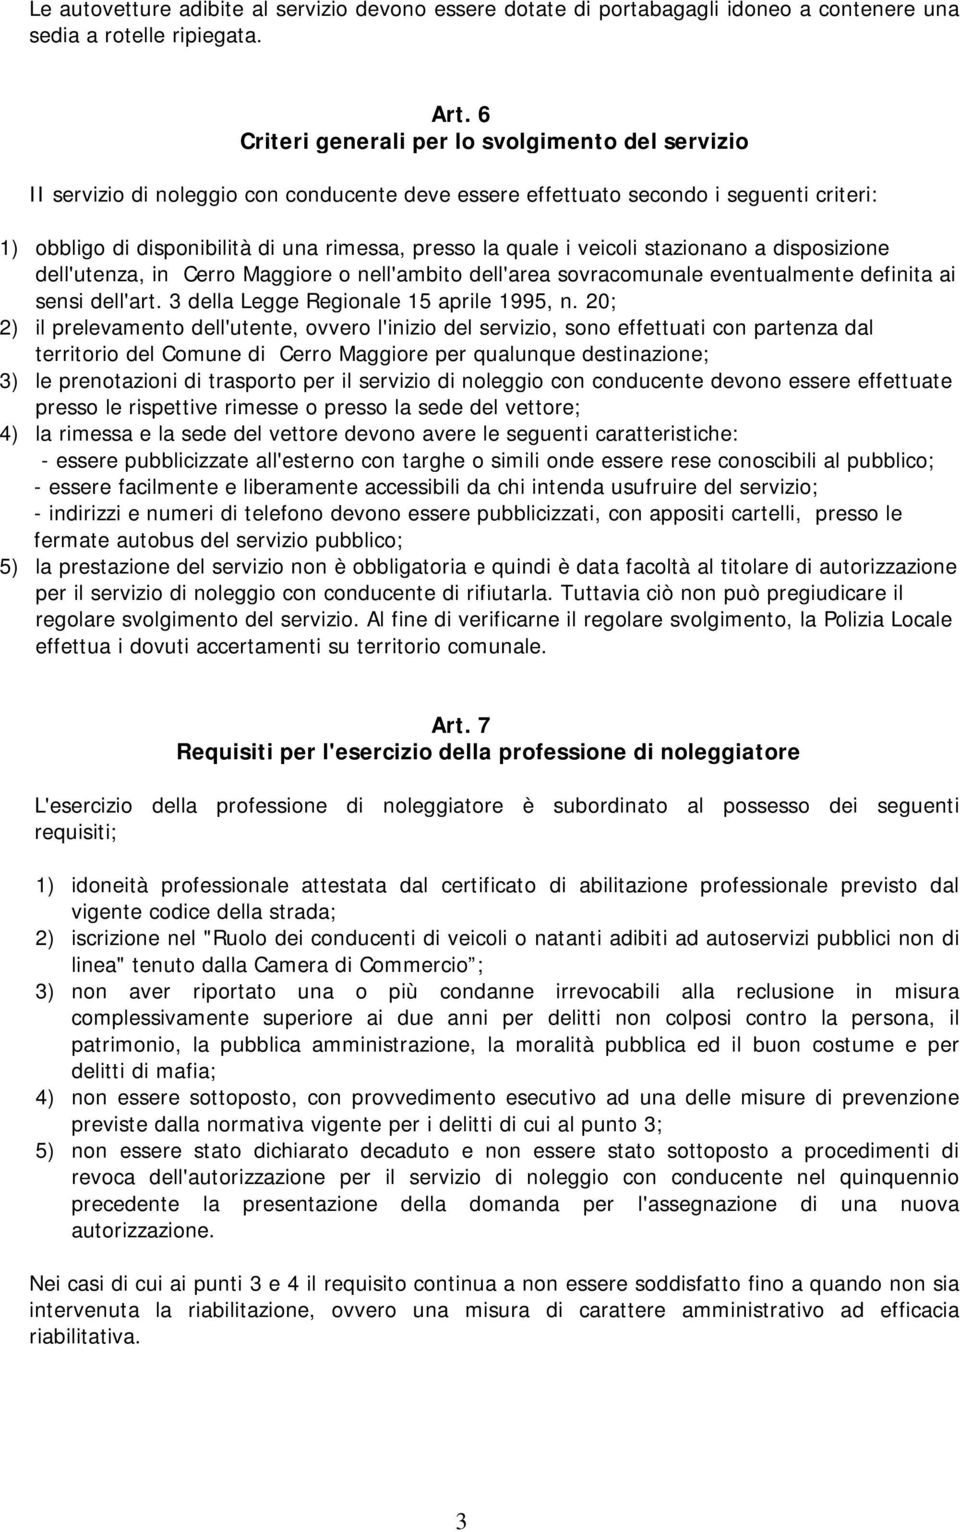 quale i veicoli stazionano a disposizione dell'utenza, in Cerro Maggiore o nell'ambito dell'area sovracomunale eventualmente definita ai sensi dell'art. 3 della Legge Regionale 15 aprile 1995, n.